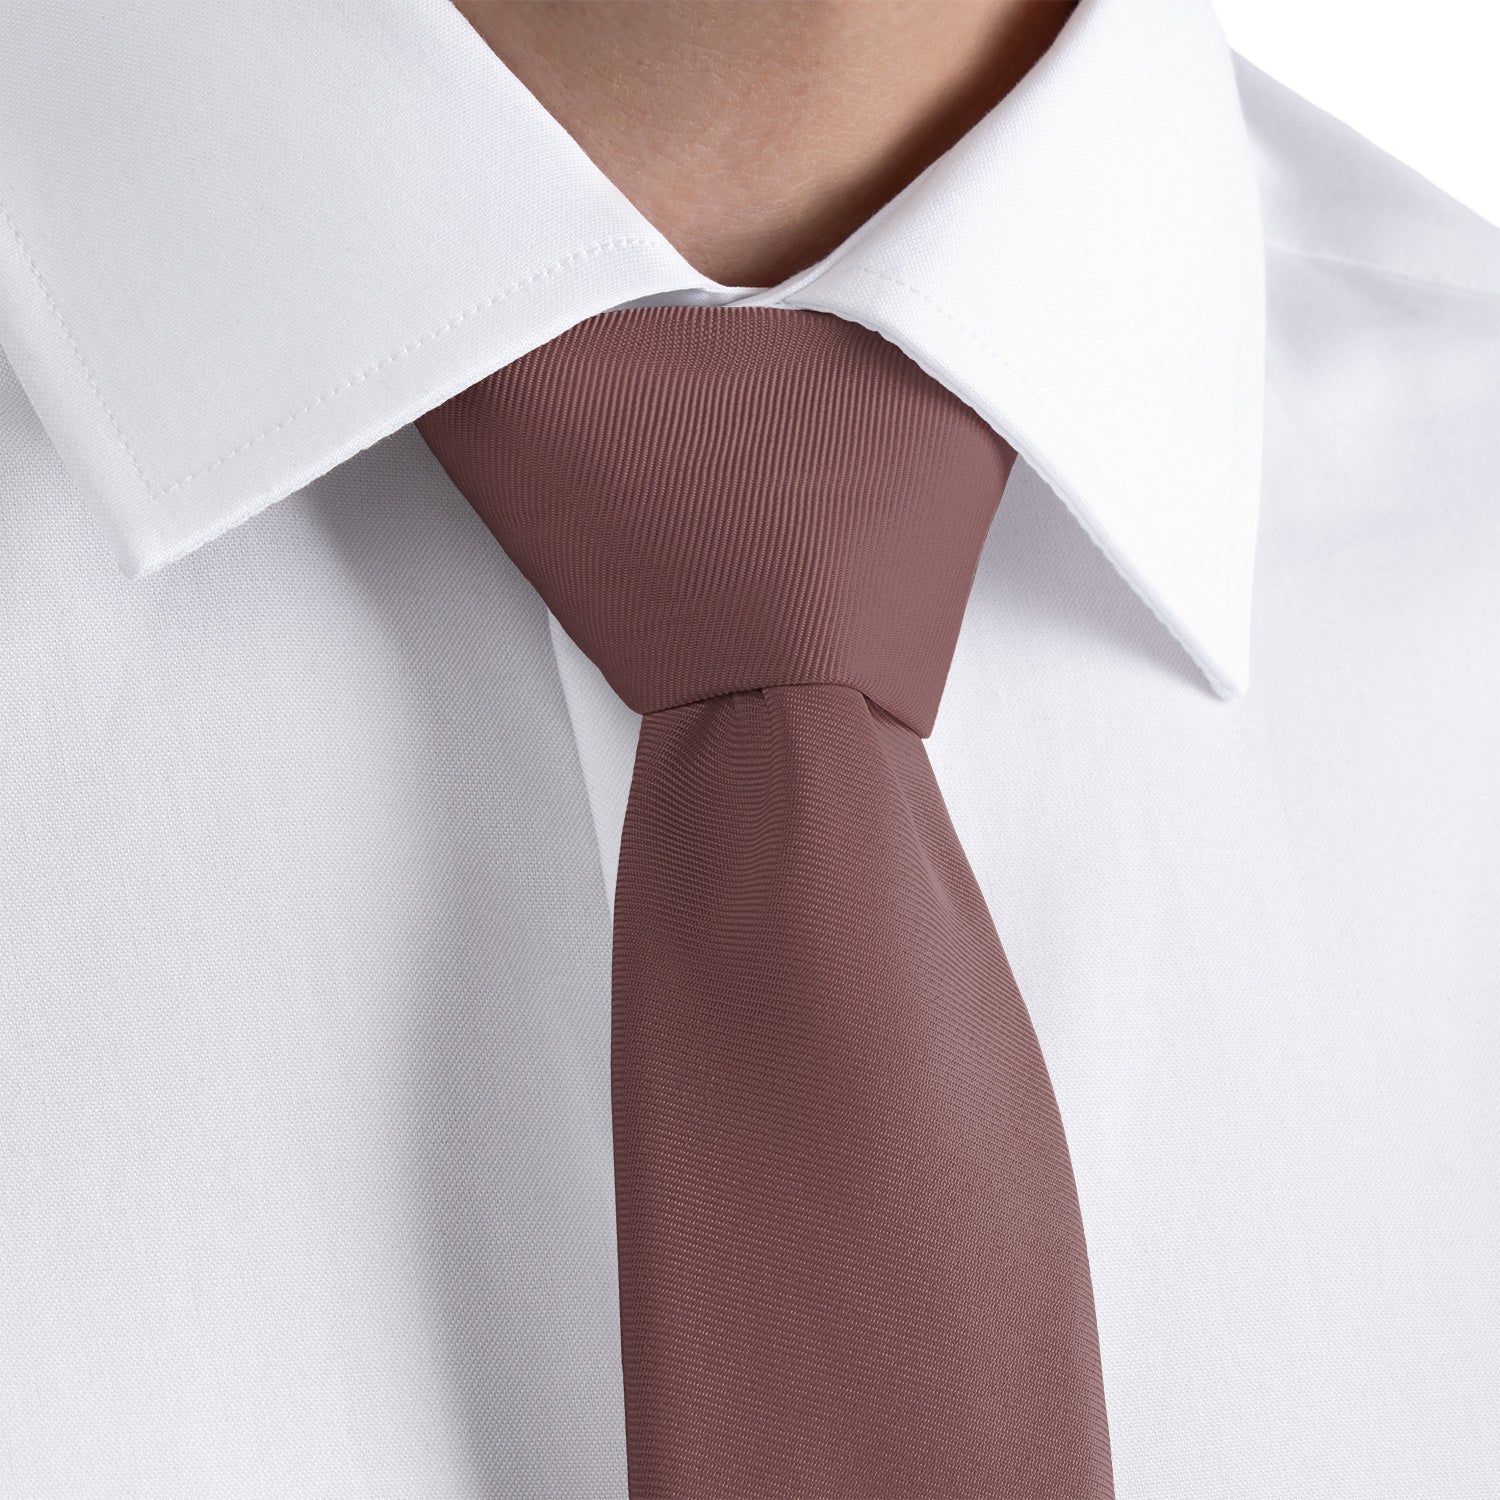 Azazie Amethyst Necktie - Rolled - Knotty Tie Co.